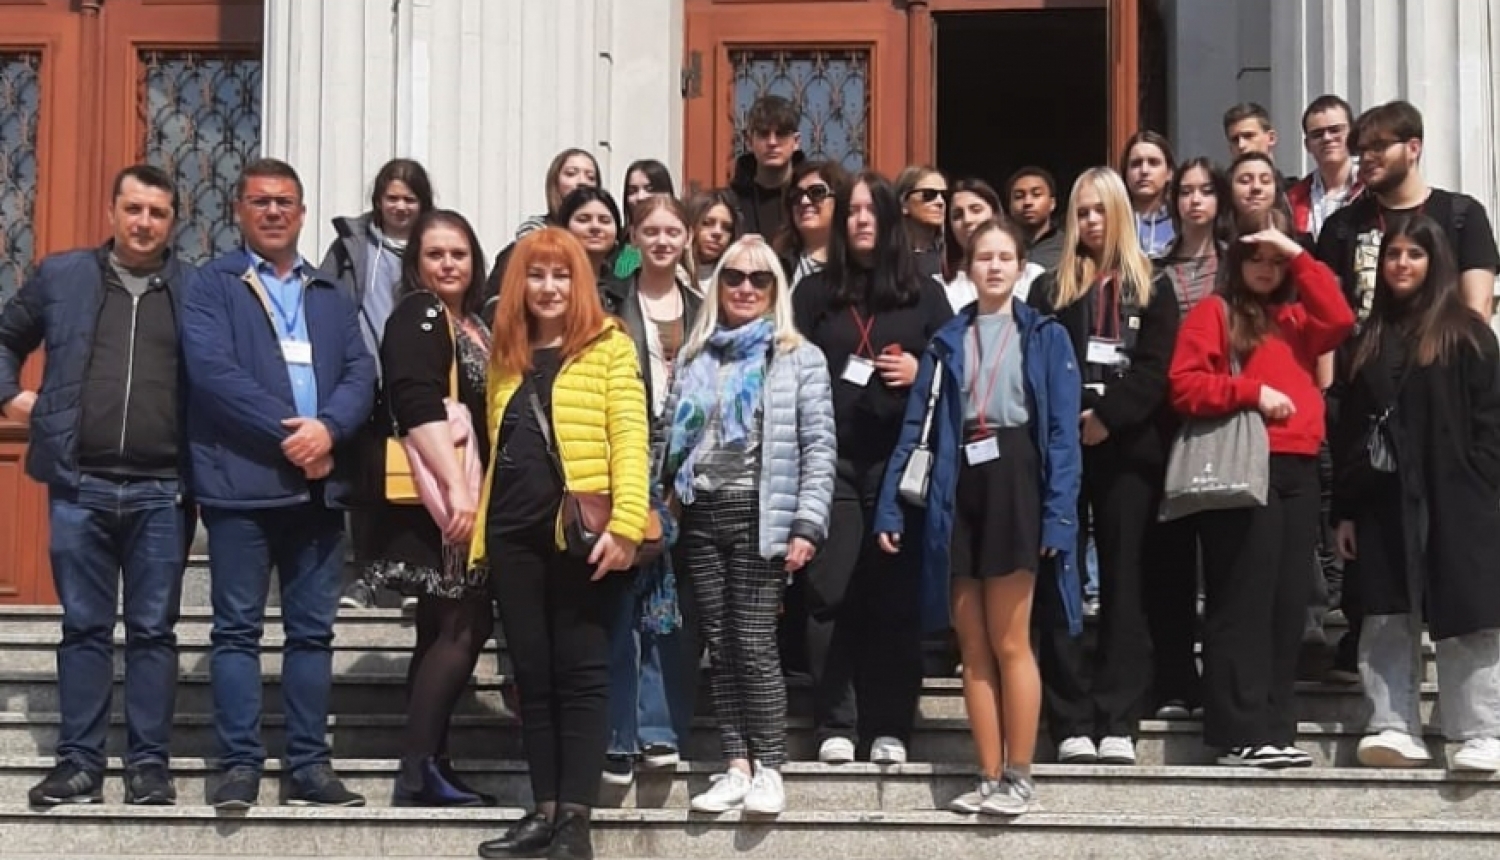  Ogres Valsts ģimnāzijas komanda piedalās Erasmus projektā Rumānijā un diskutē par veiksmīgas nākotnes izvēli